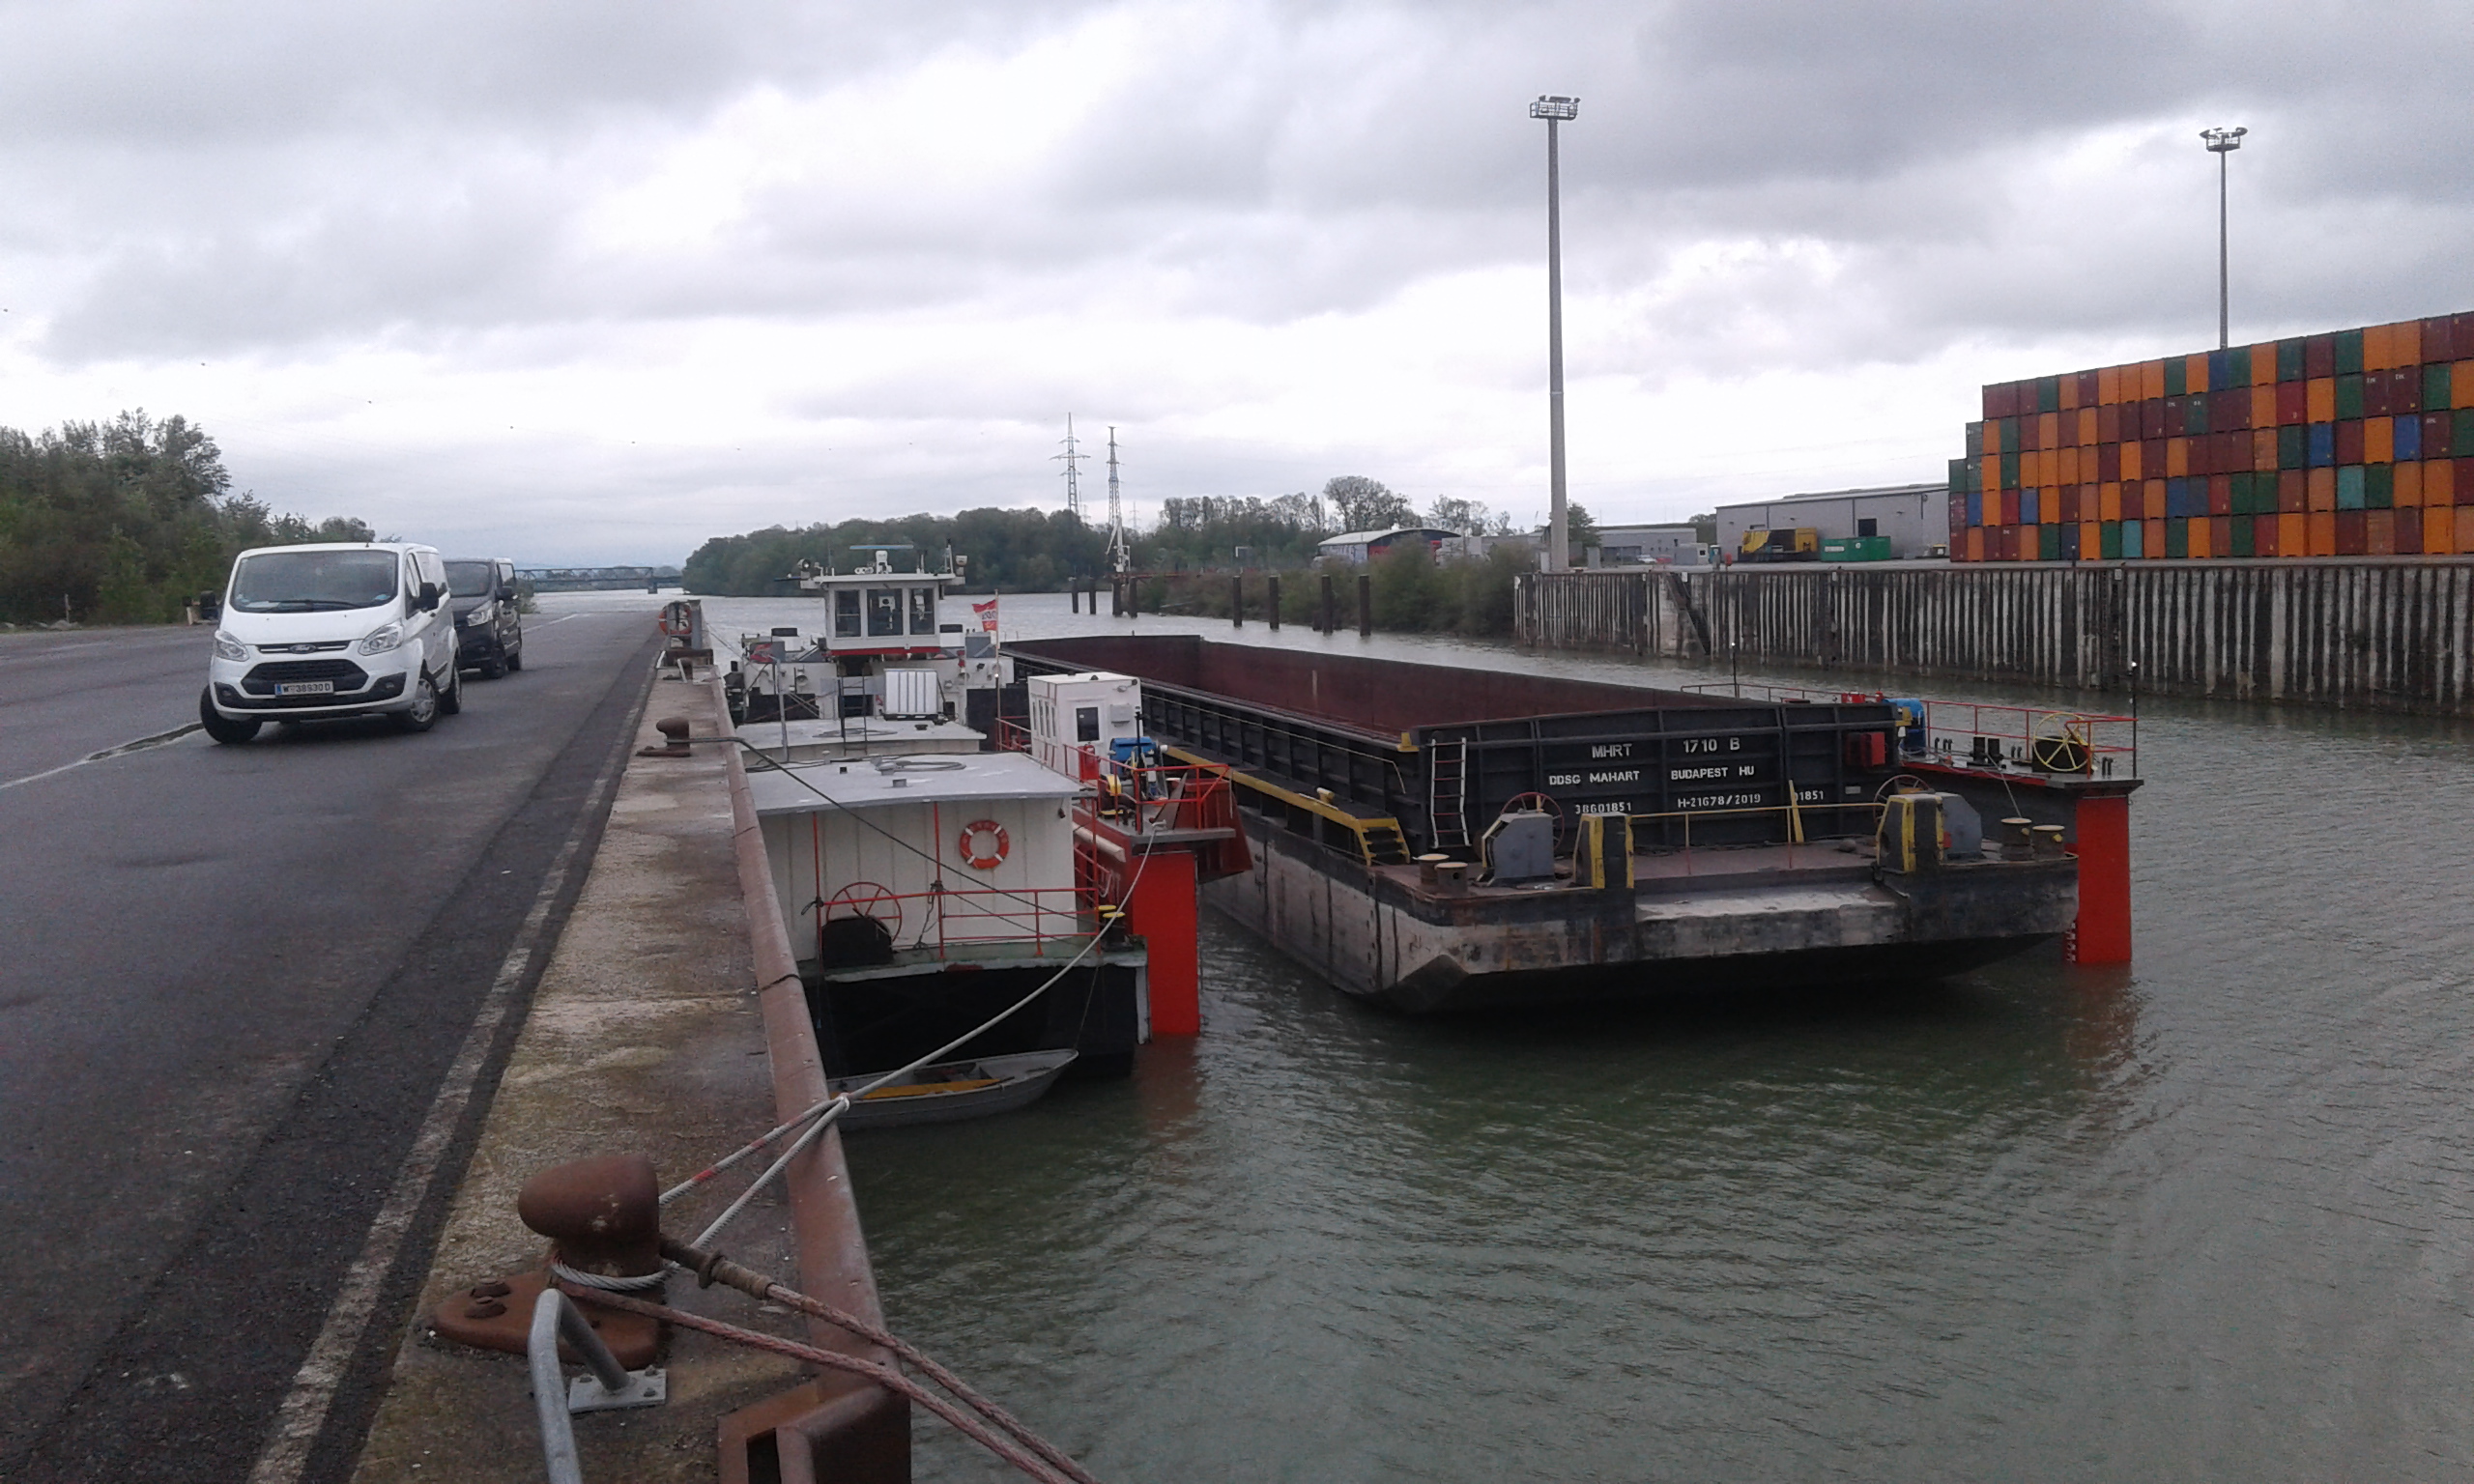 docking barge3